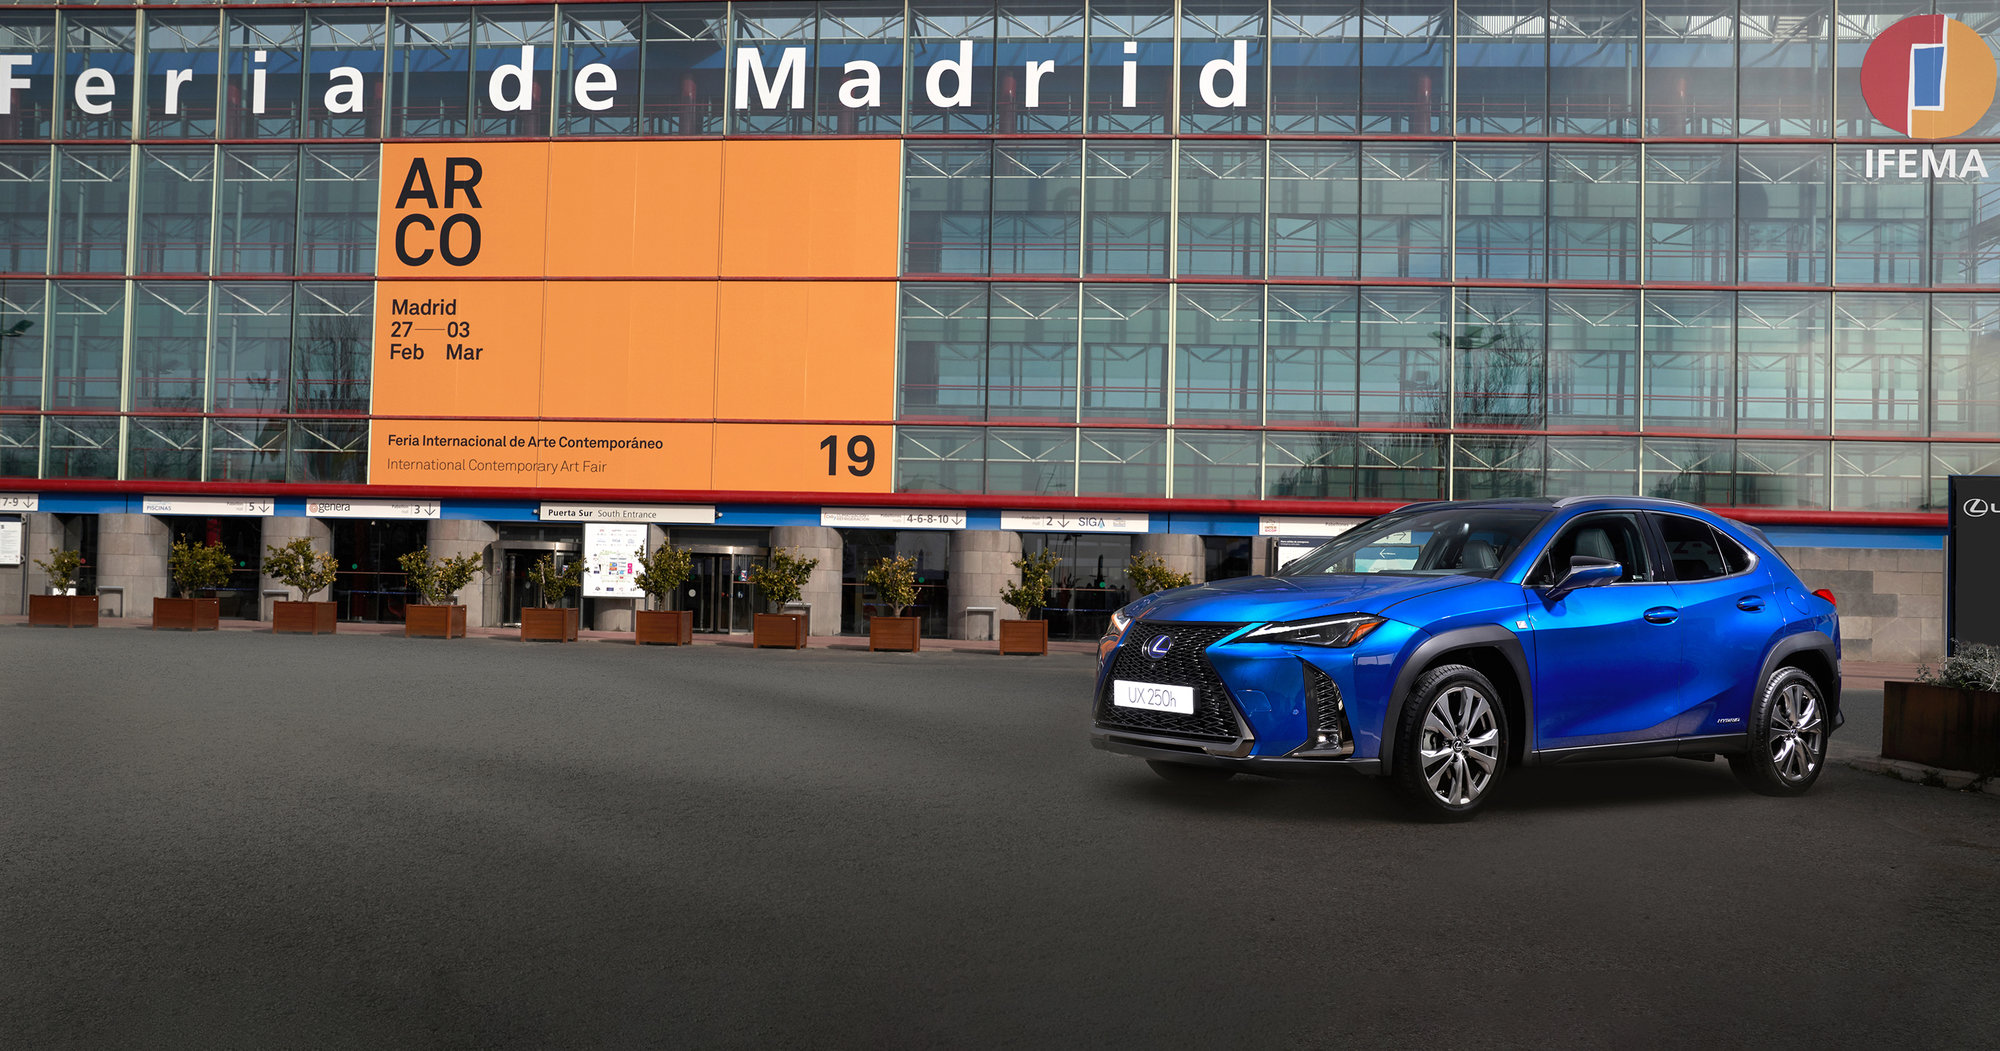 Galería: Lexus, coche oficial y proveedor de soluciones de movilidad de ARCOmadrid 2019